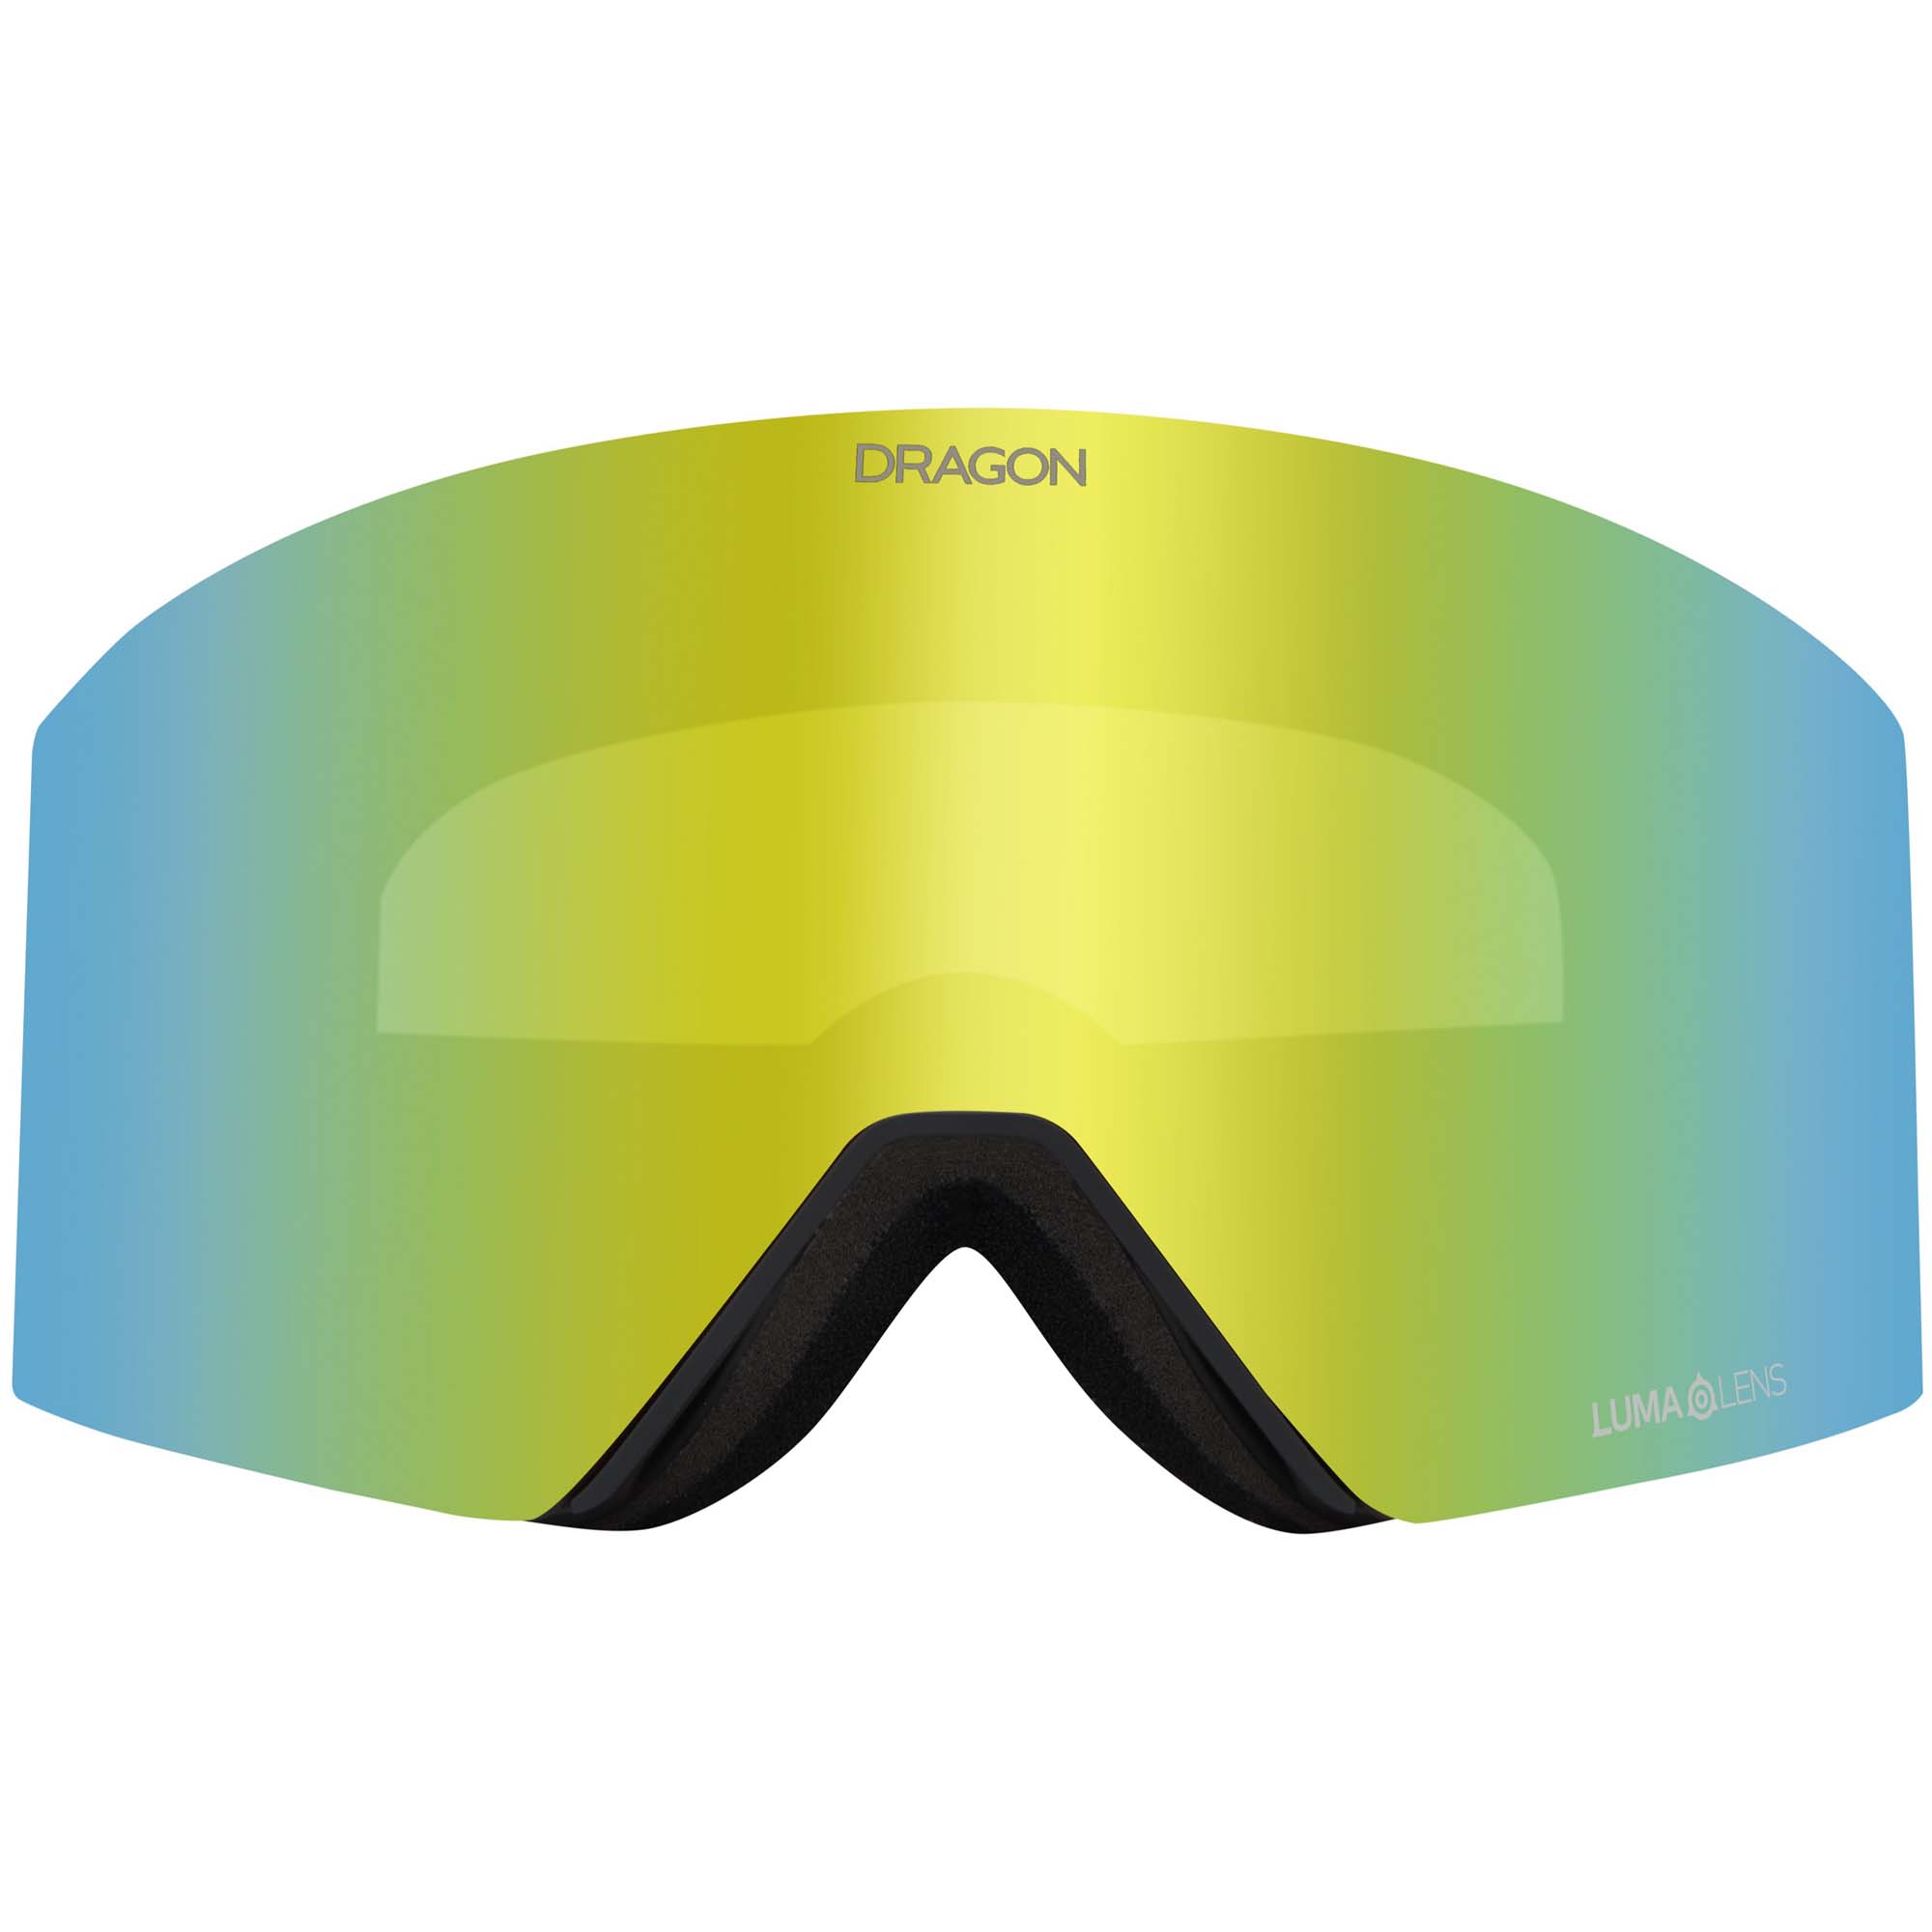 Dragon RVX MAG OTG Snowboard/Ski Goggles